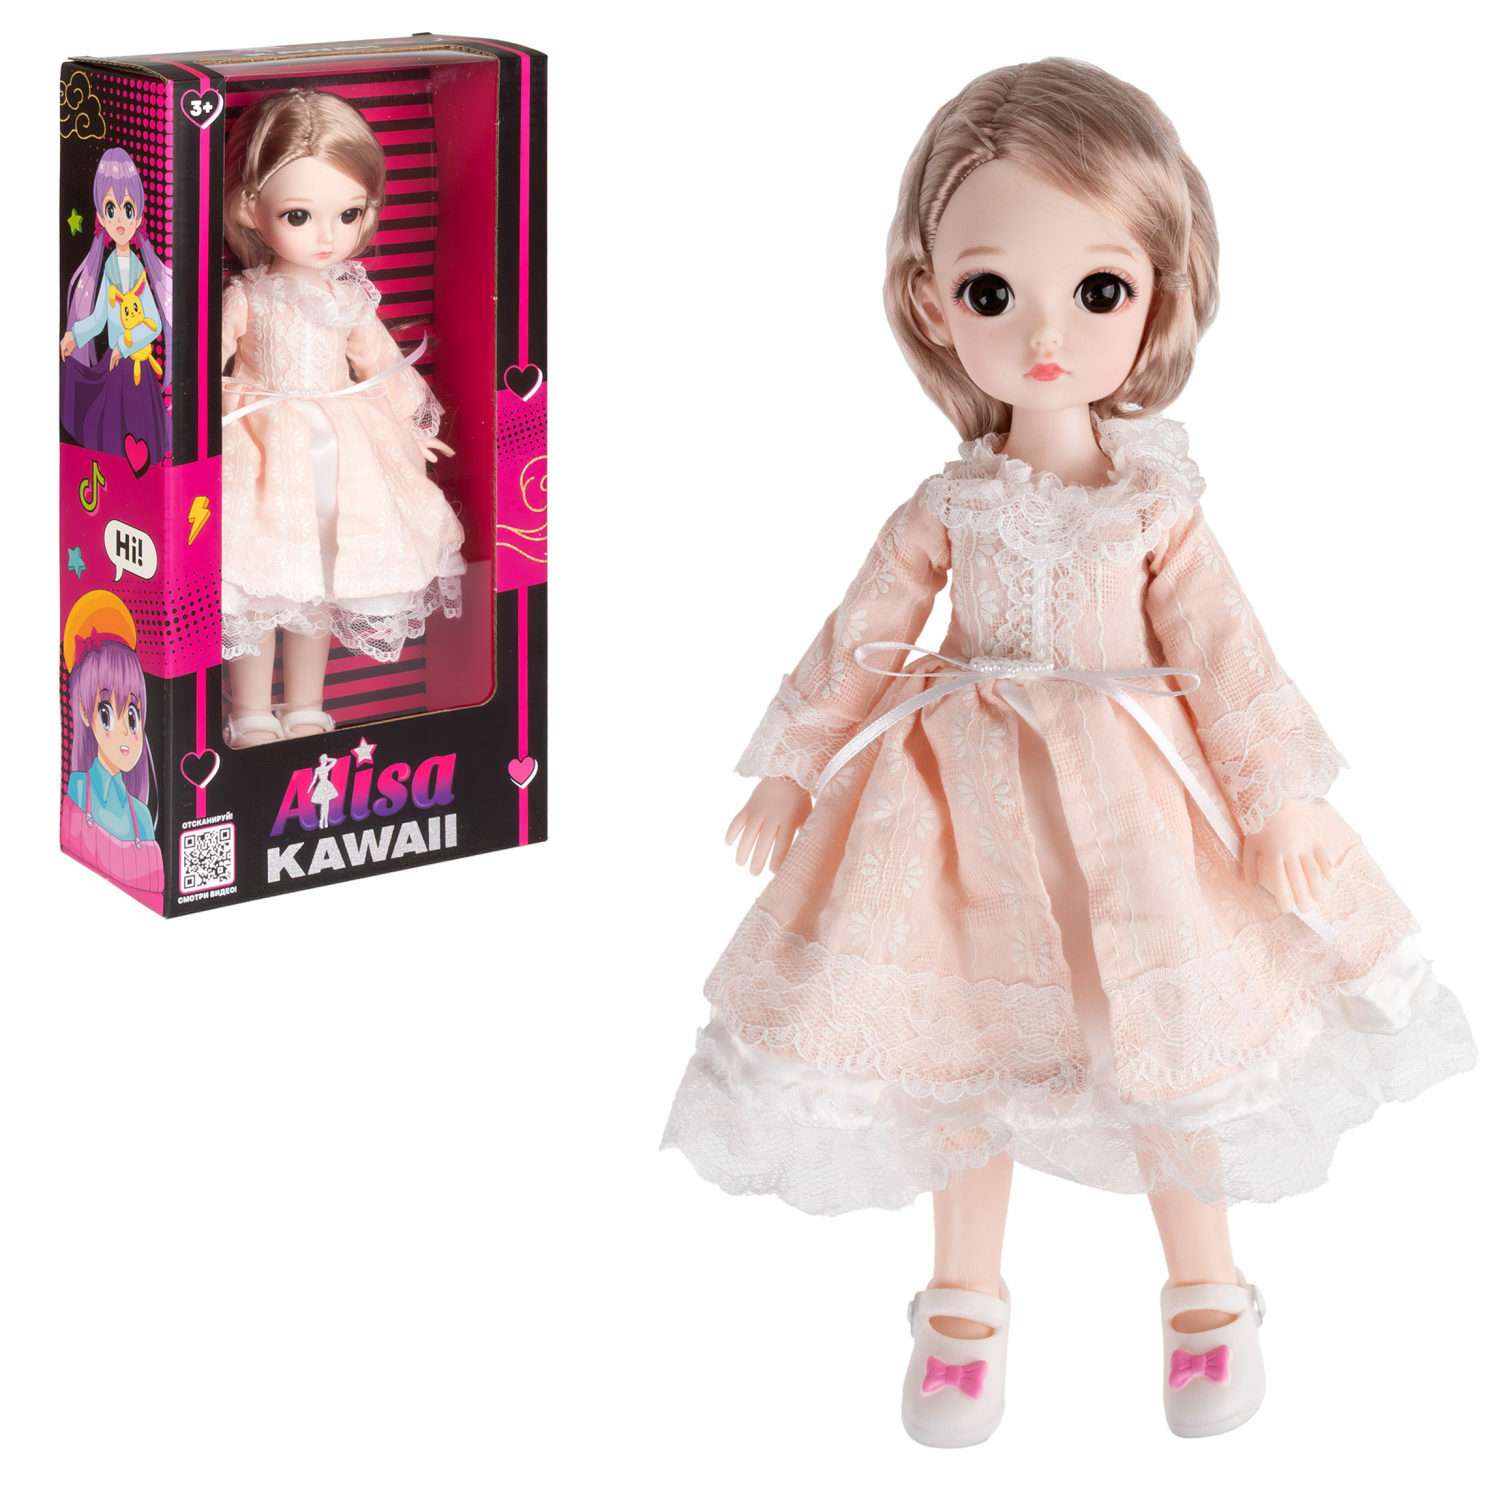 Кукла шарнирная 30 см 1TOY Alisa Kawaii с длинными волосами блондинка БЖД bjd аниме экшн фигурка игрушки для девочек Т24343 - фото 2